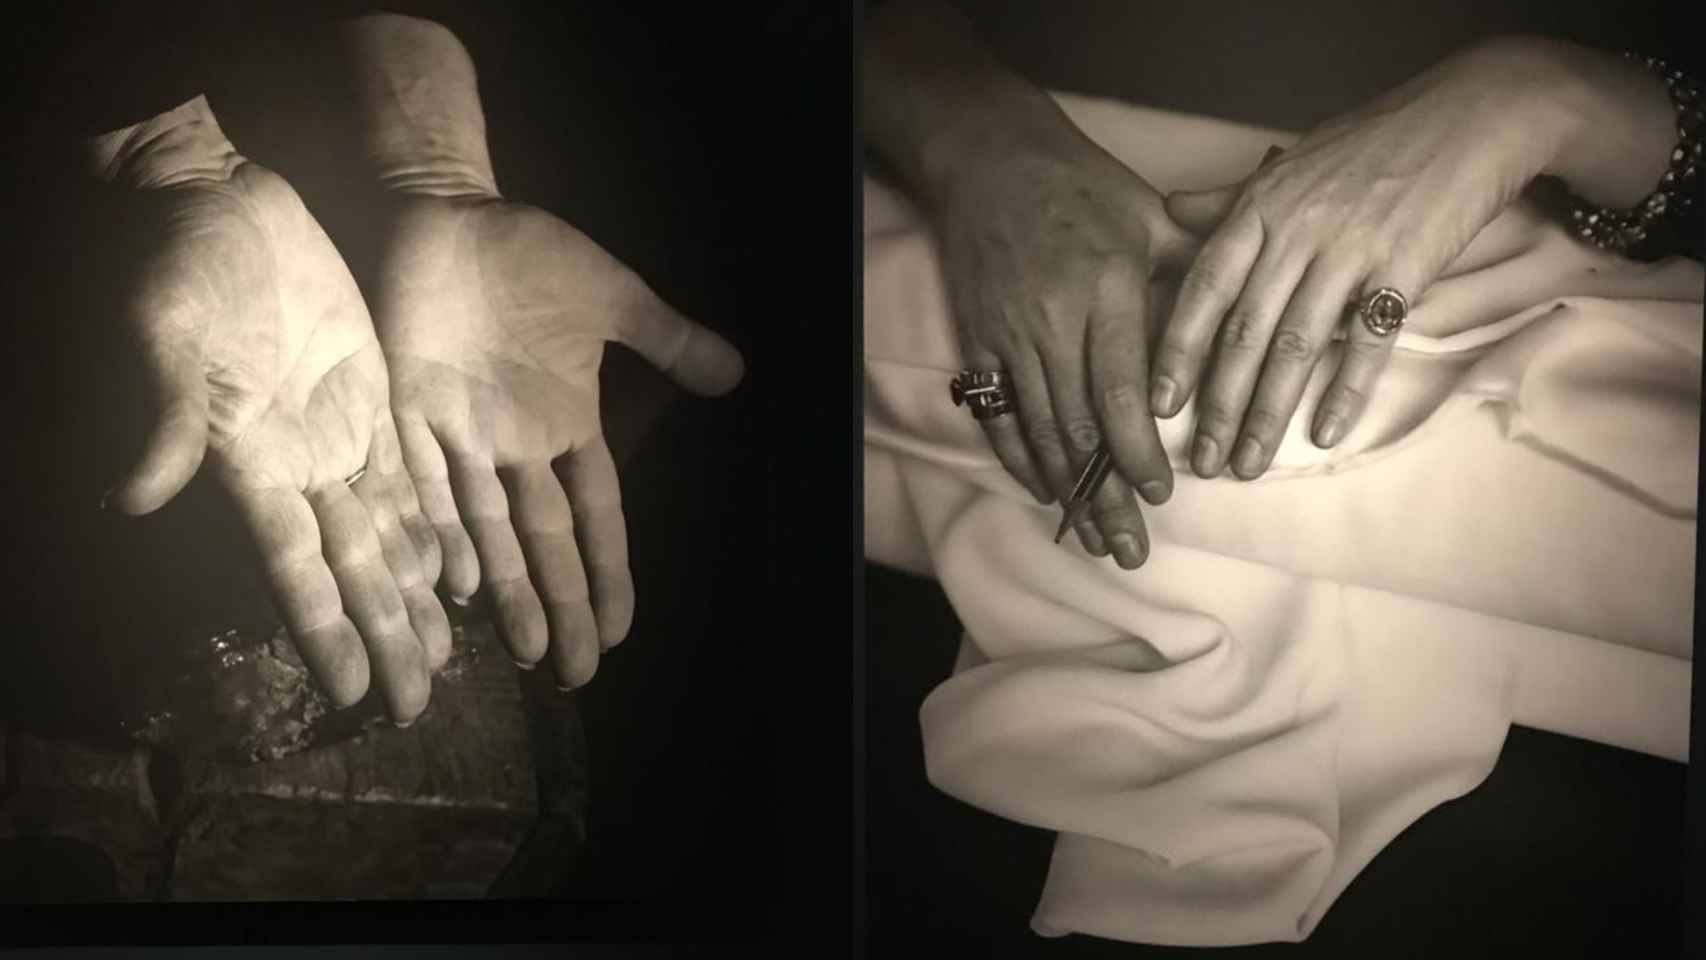 'Las manos abiertas de Pablo Picasso sobre su amatista', foto de Nick de Morgoli en 1947, y 'Las manos de Coco Chanel', de André Kertész en 1938.